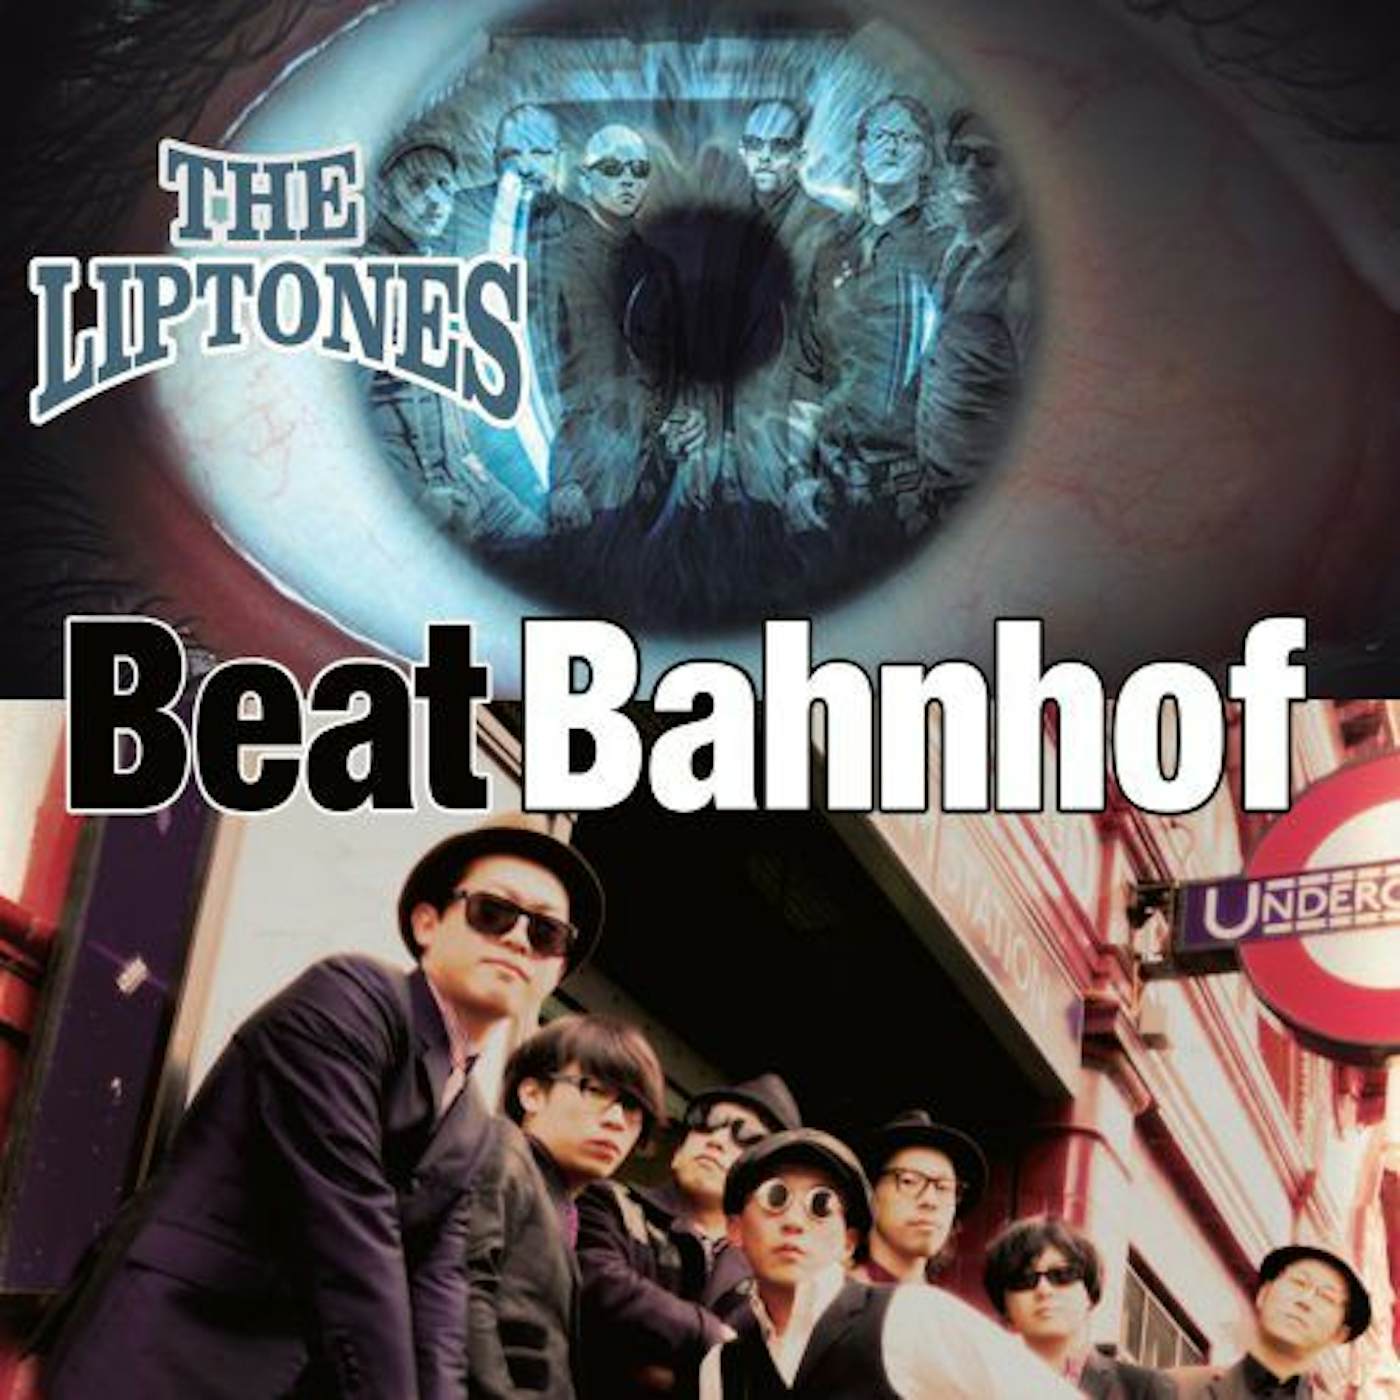 The Liptones / BEAT BAHNHOF Vinyl Record